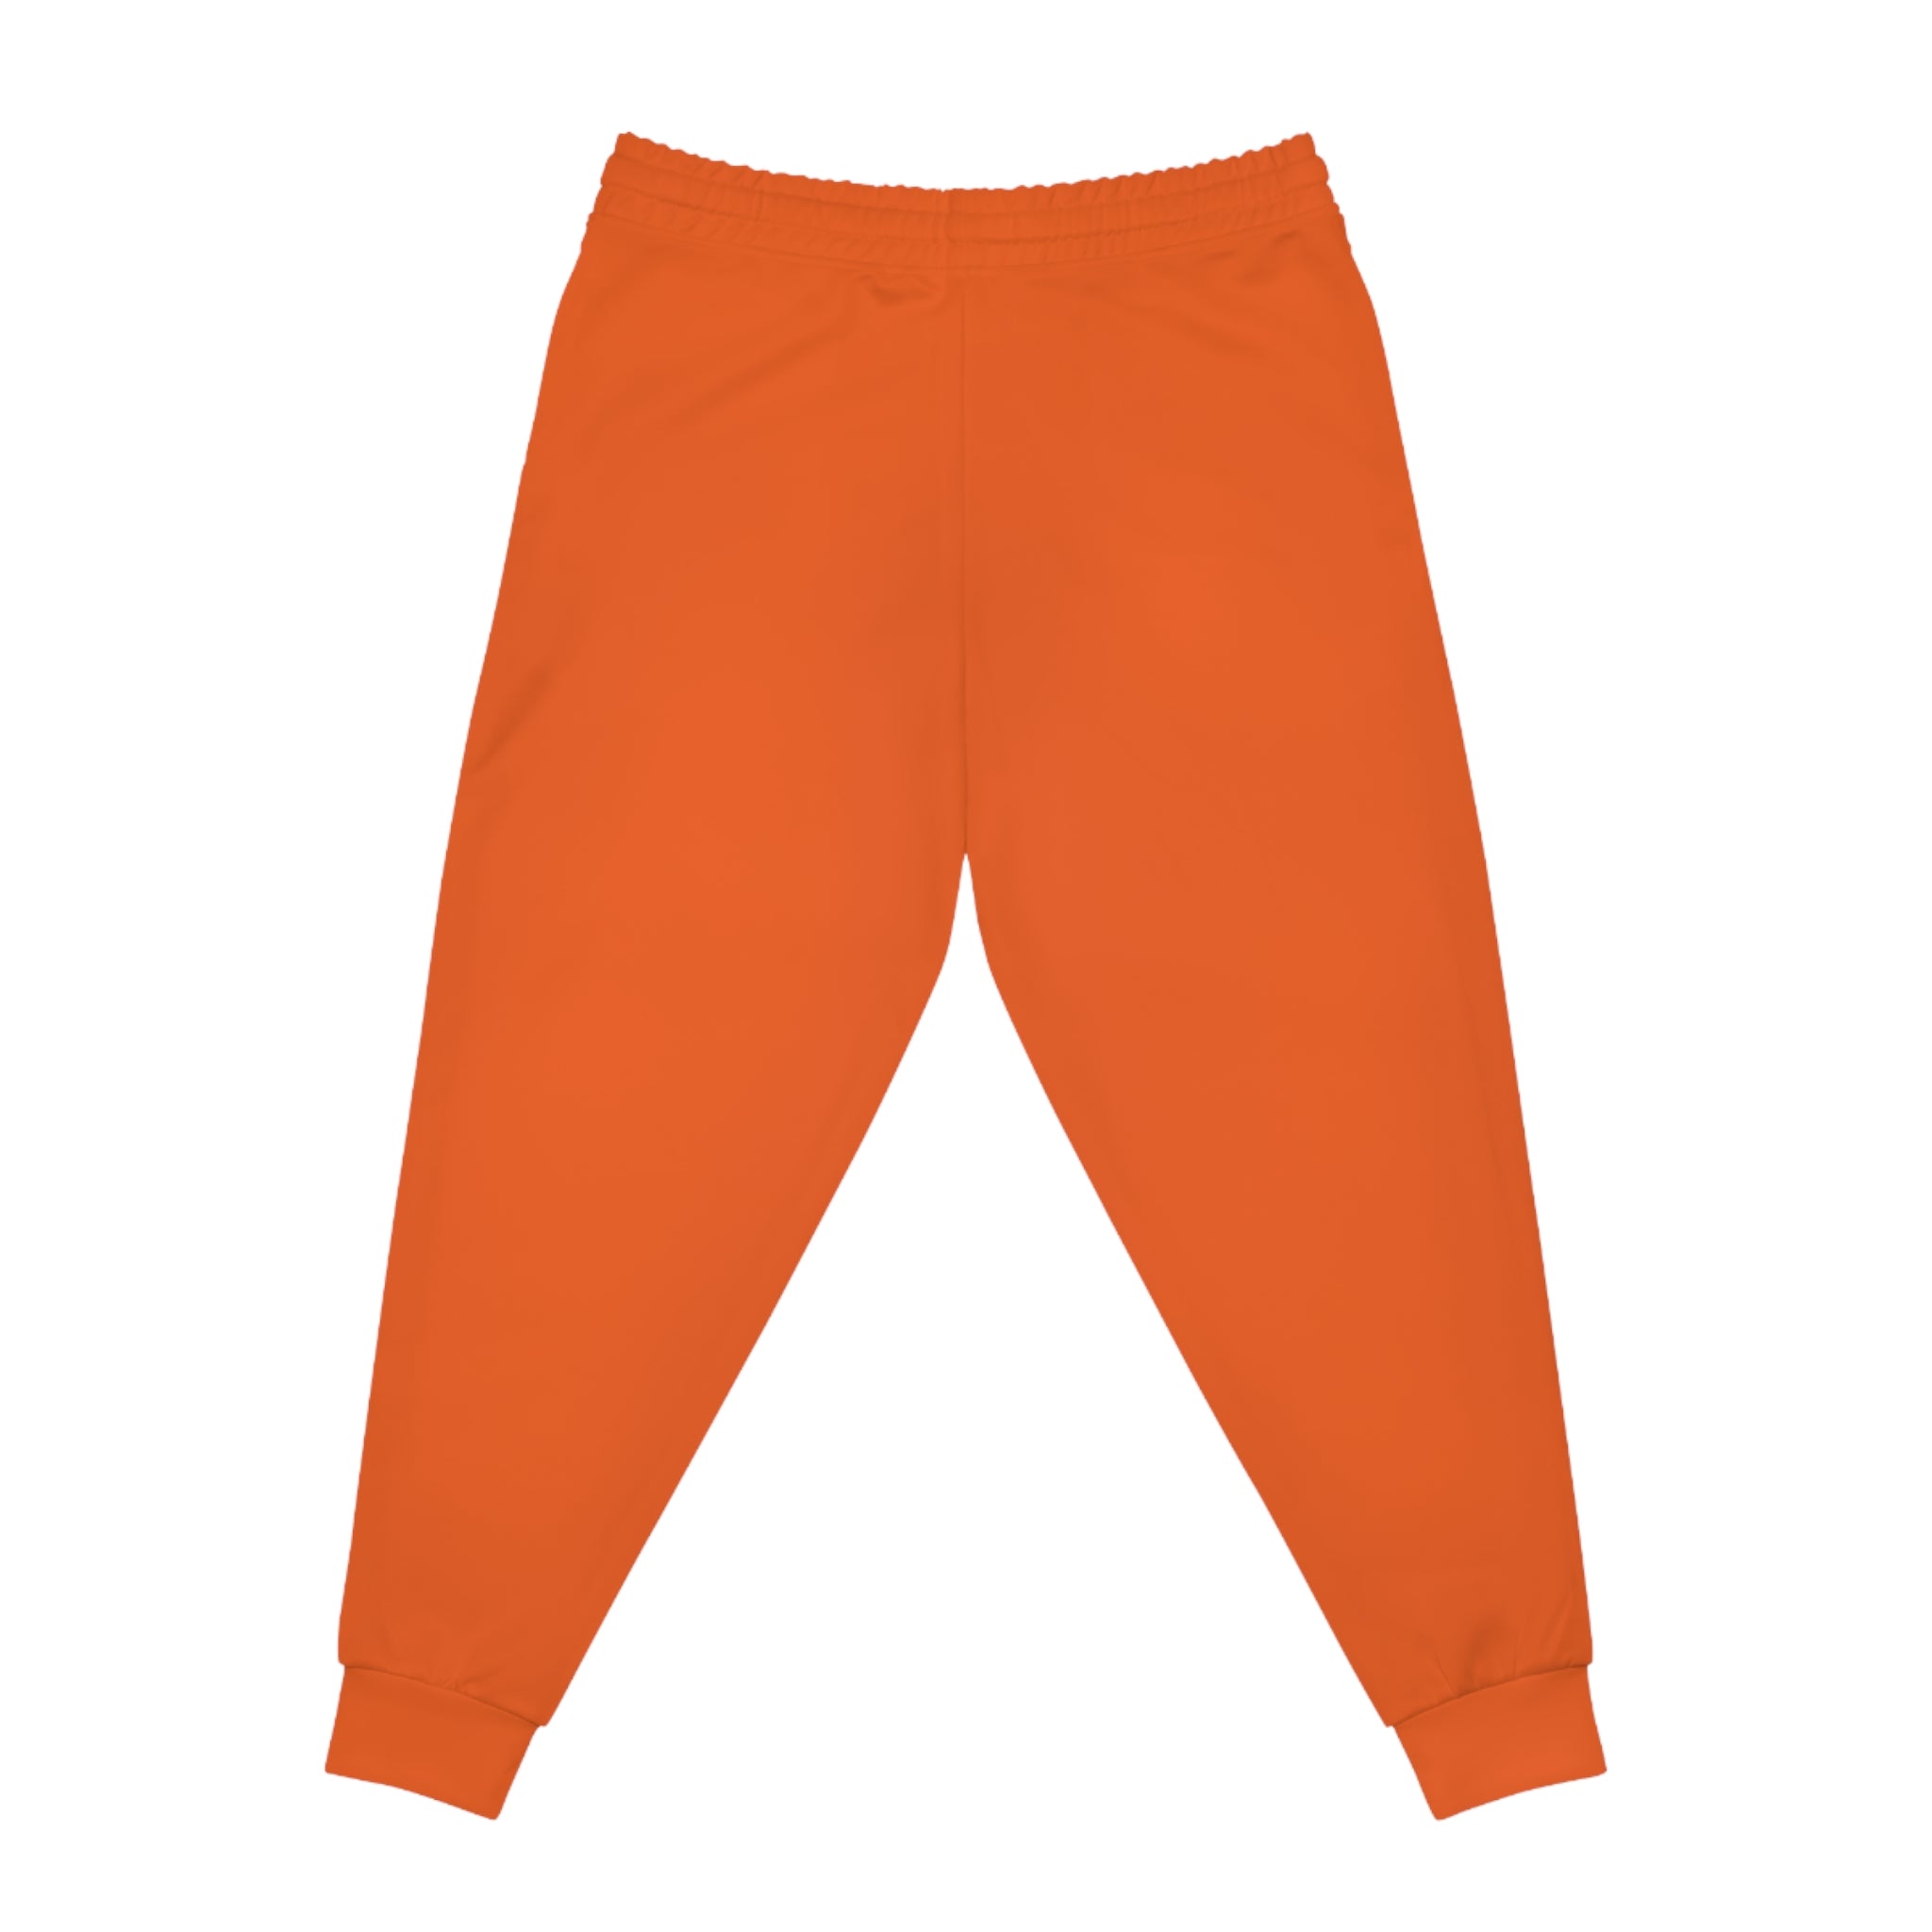 CombinedMinds Athletic Joggers Orange/Black Logo